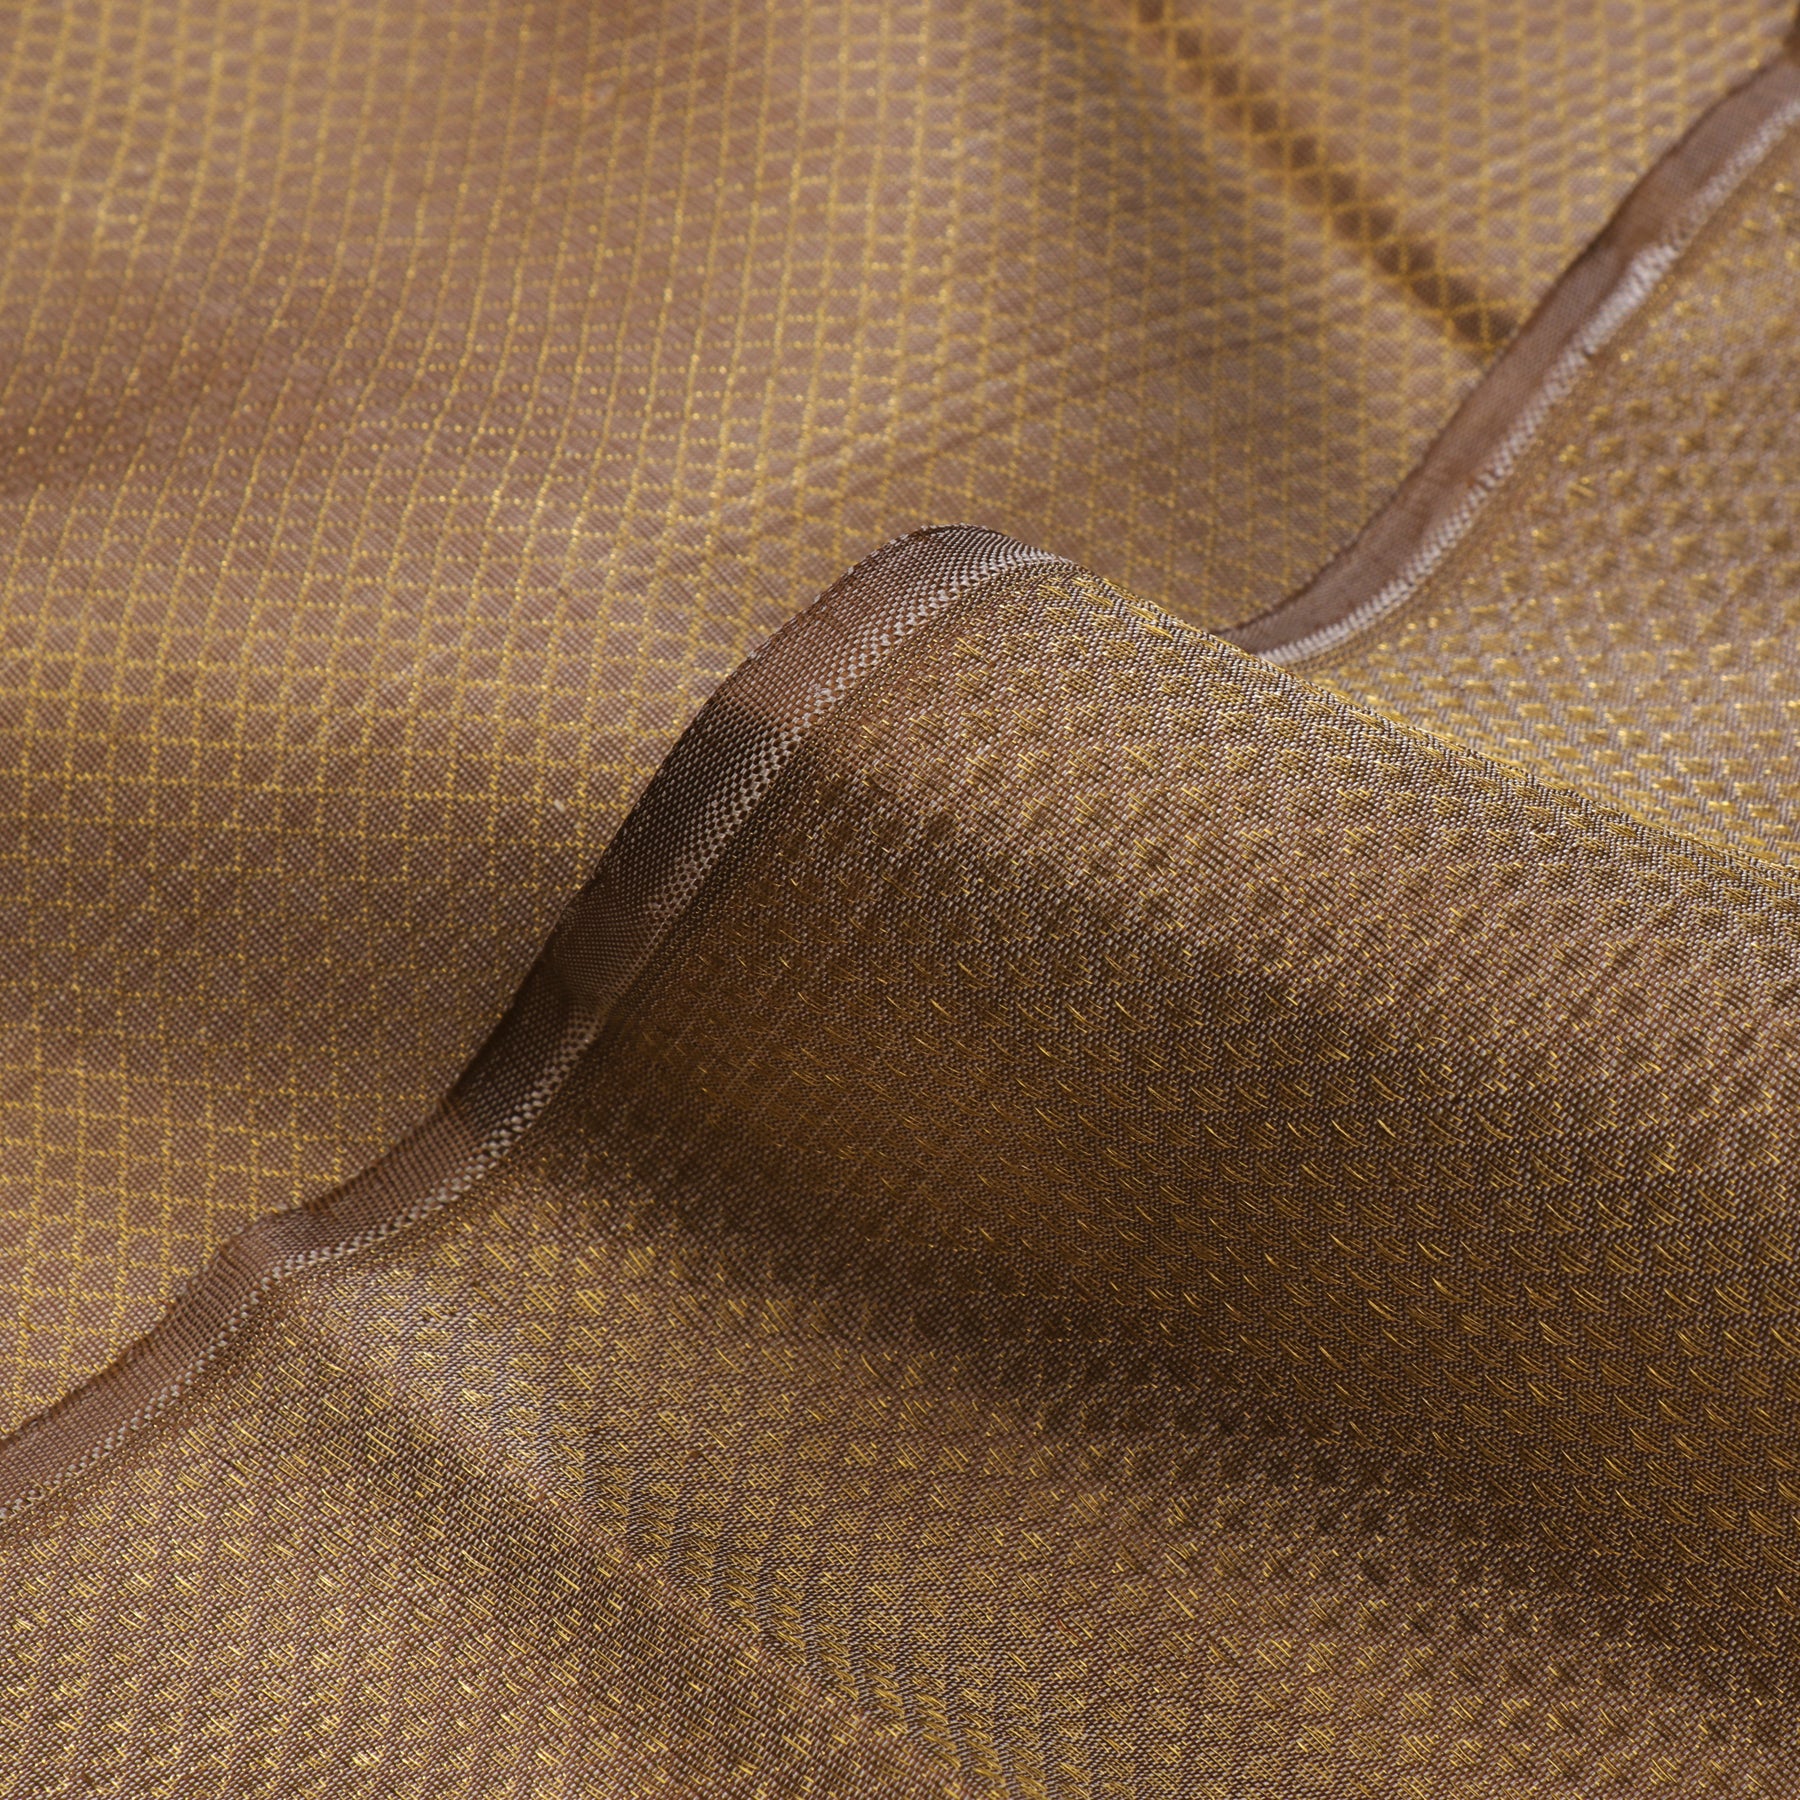 Kanakavalli Kanjivaram Silk Fabric Length 110-27-110301 - Profile View